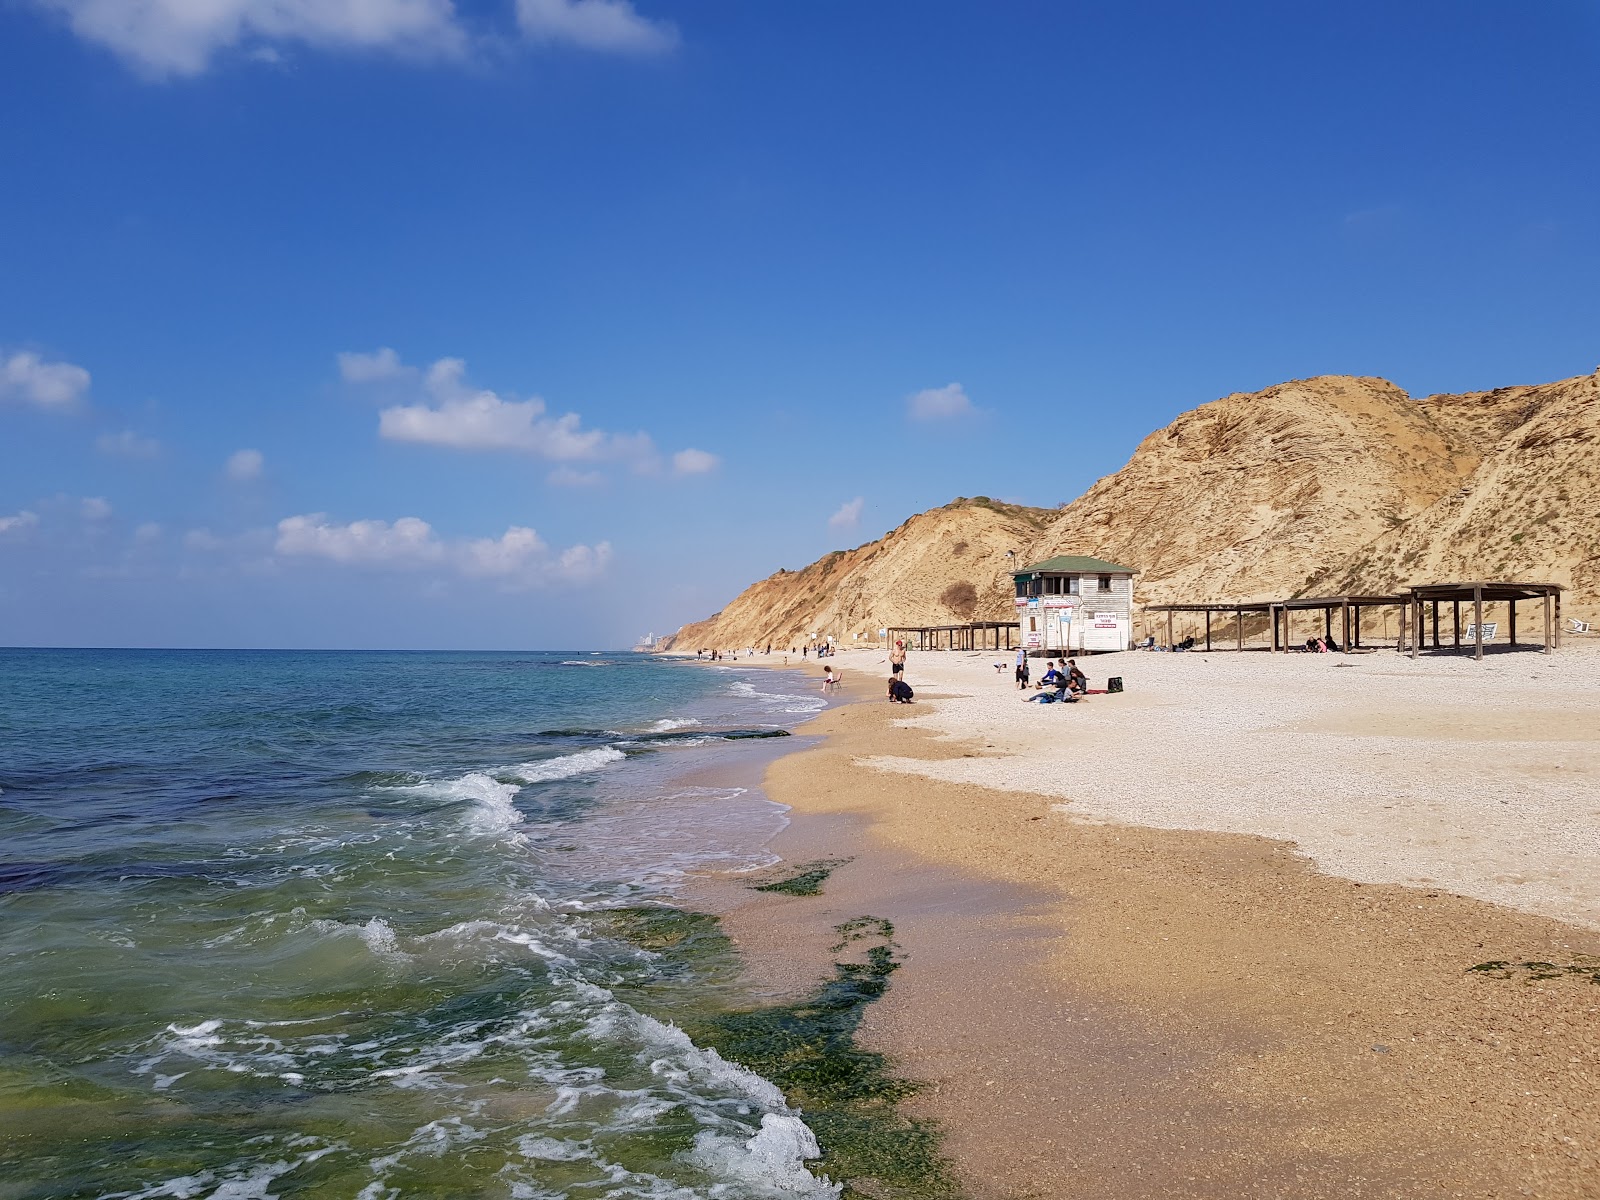 Photo of Ga'ash beach with spacious shore